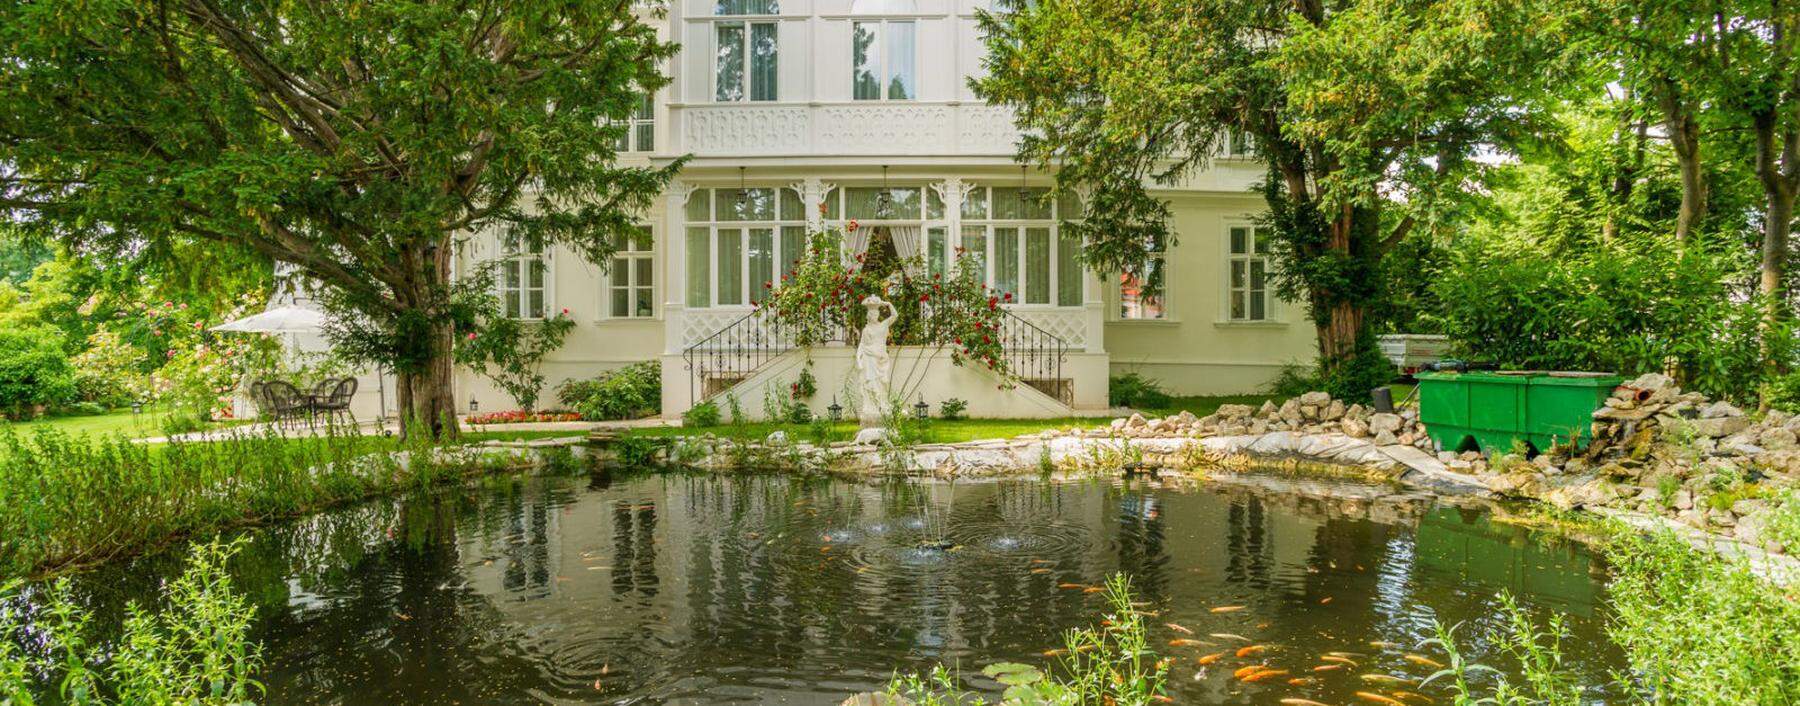 Villa in Baden samt Rosenbogen und Koi-Teich im Garten.